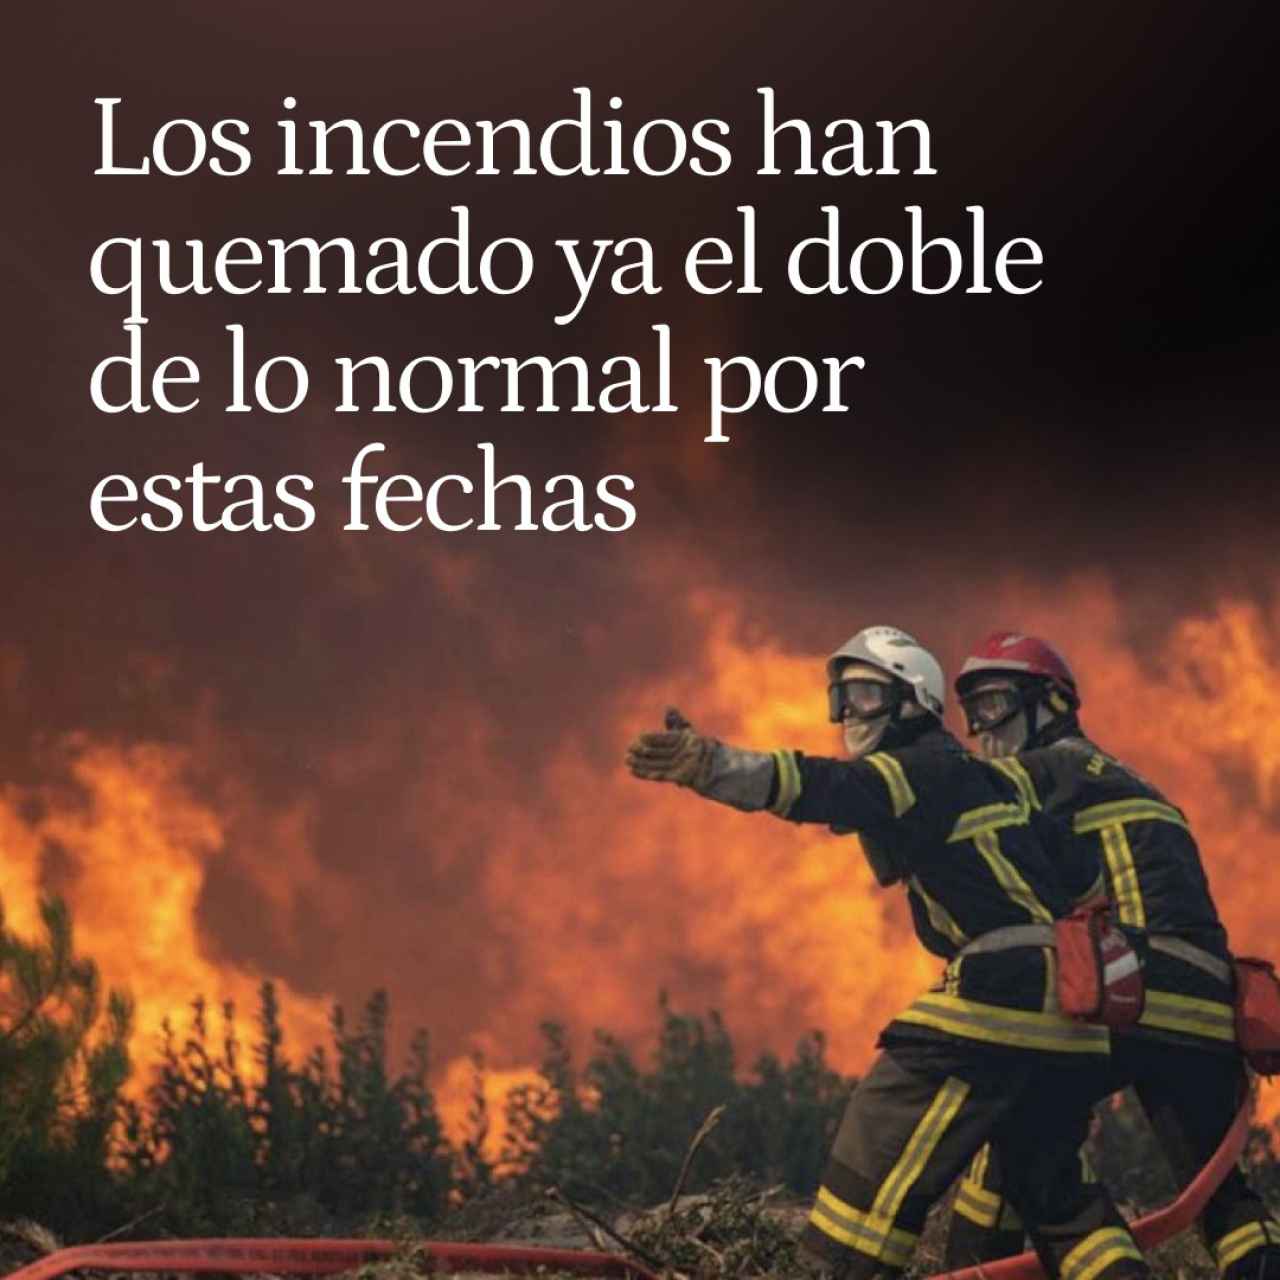 Los incendios han quemado 66.000 hectáreas en España antes del verano, el doble de lo normal por estas fechas